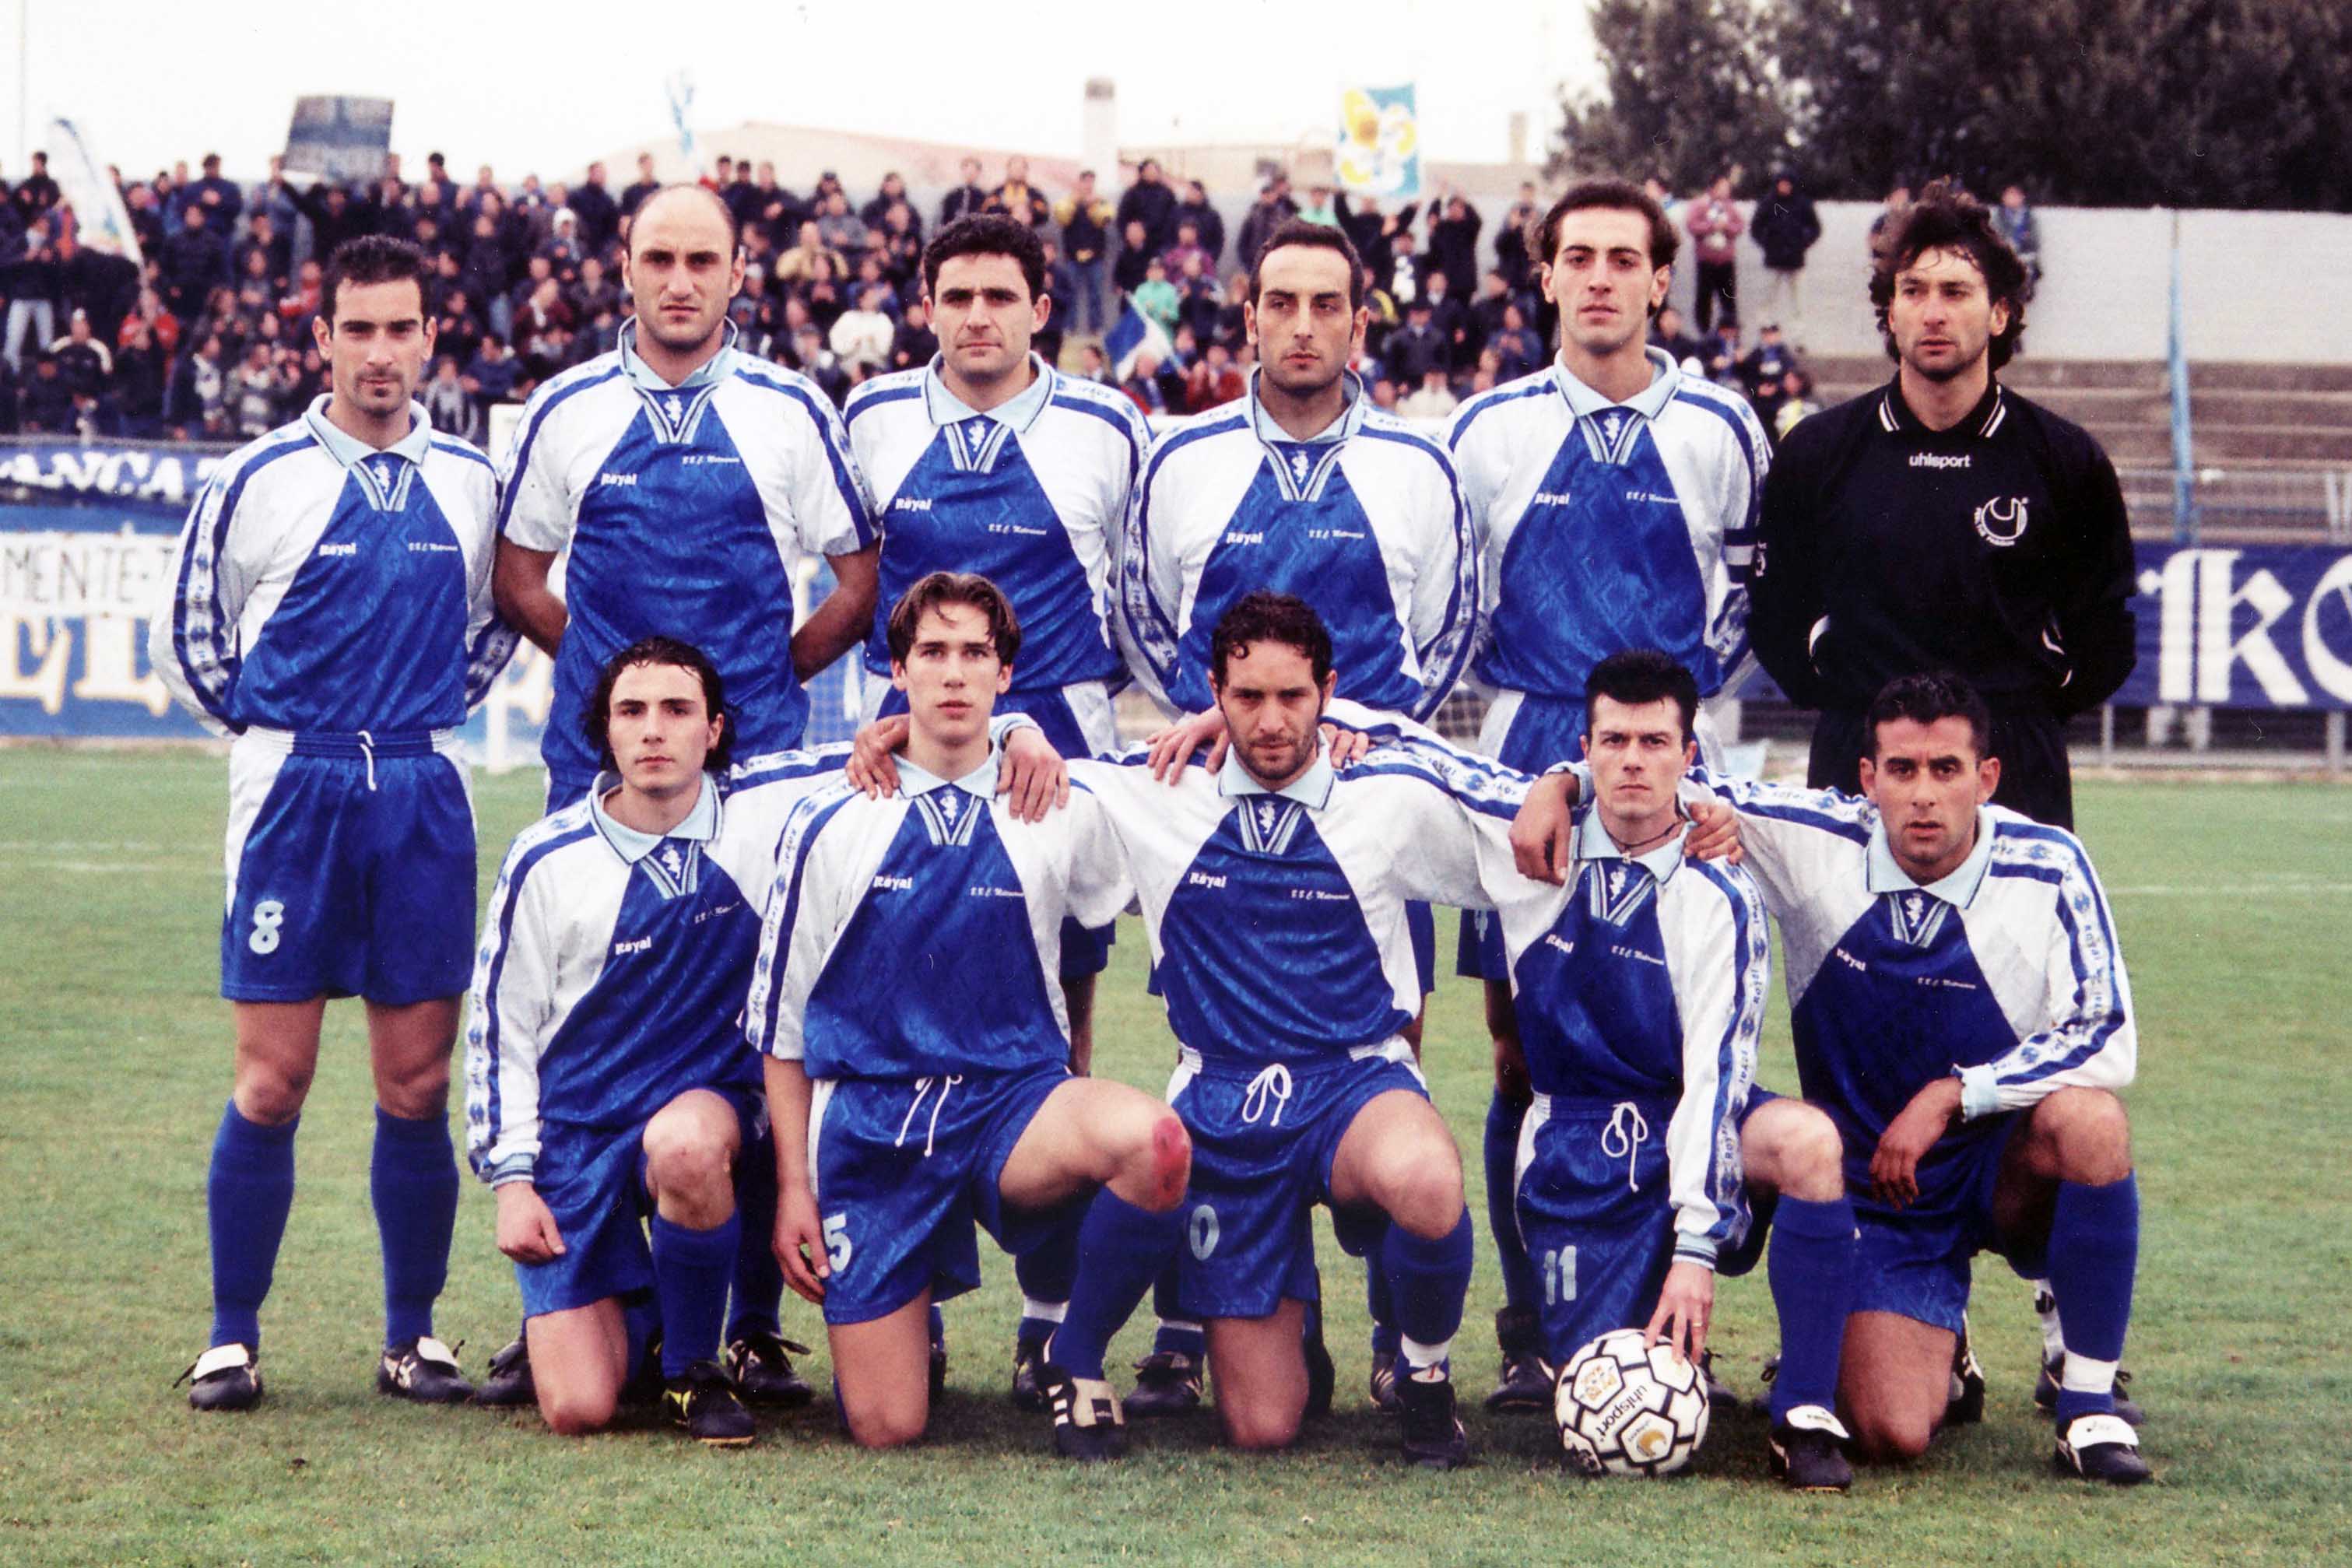 1999-00 - A.S. Materasassi - Eccellenza Lucana - 1º posto